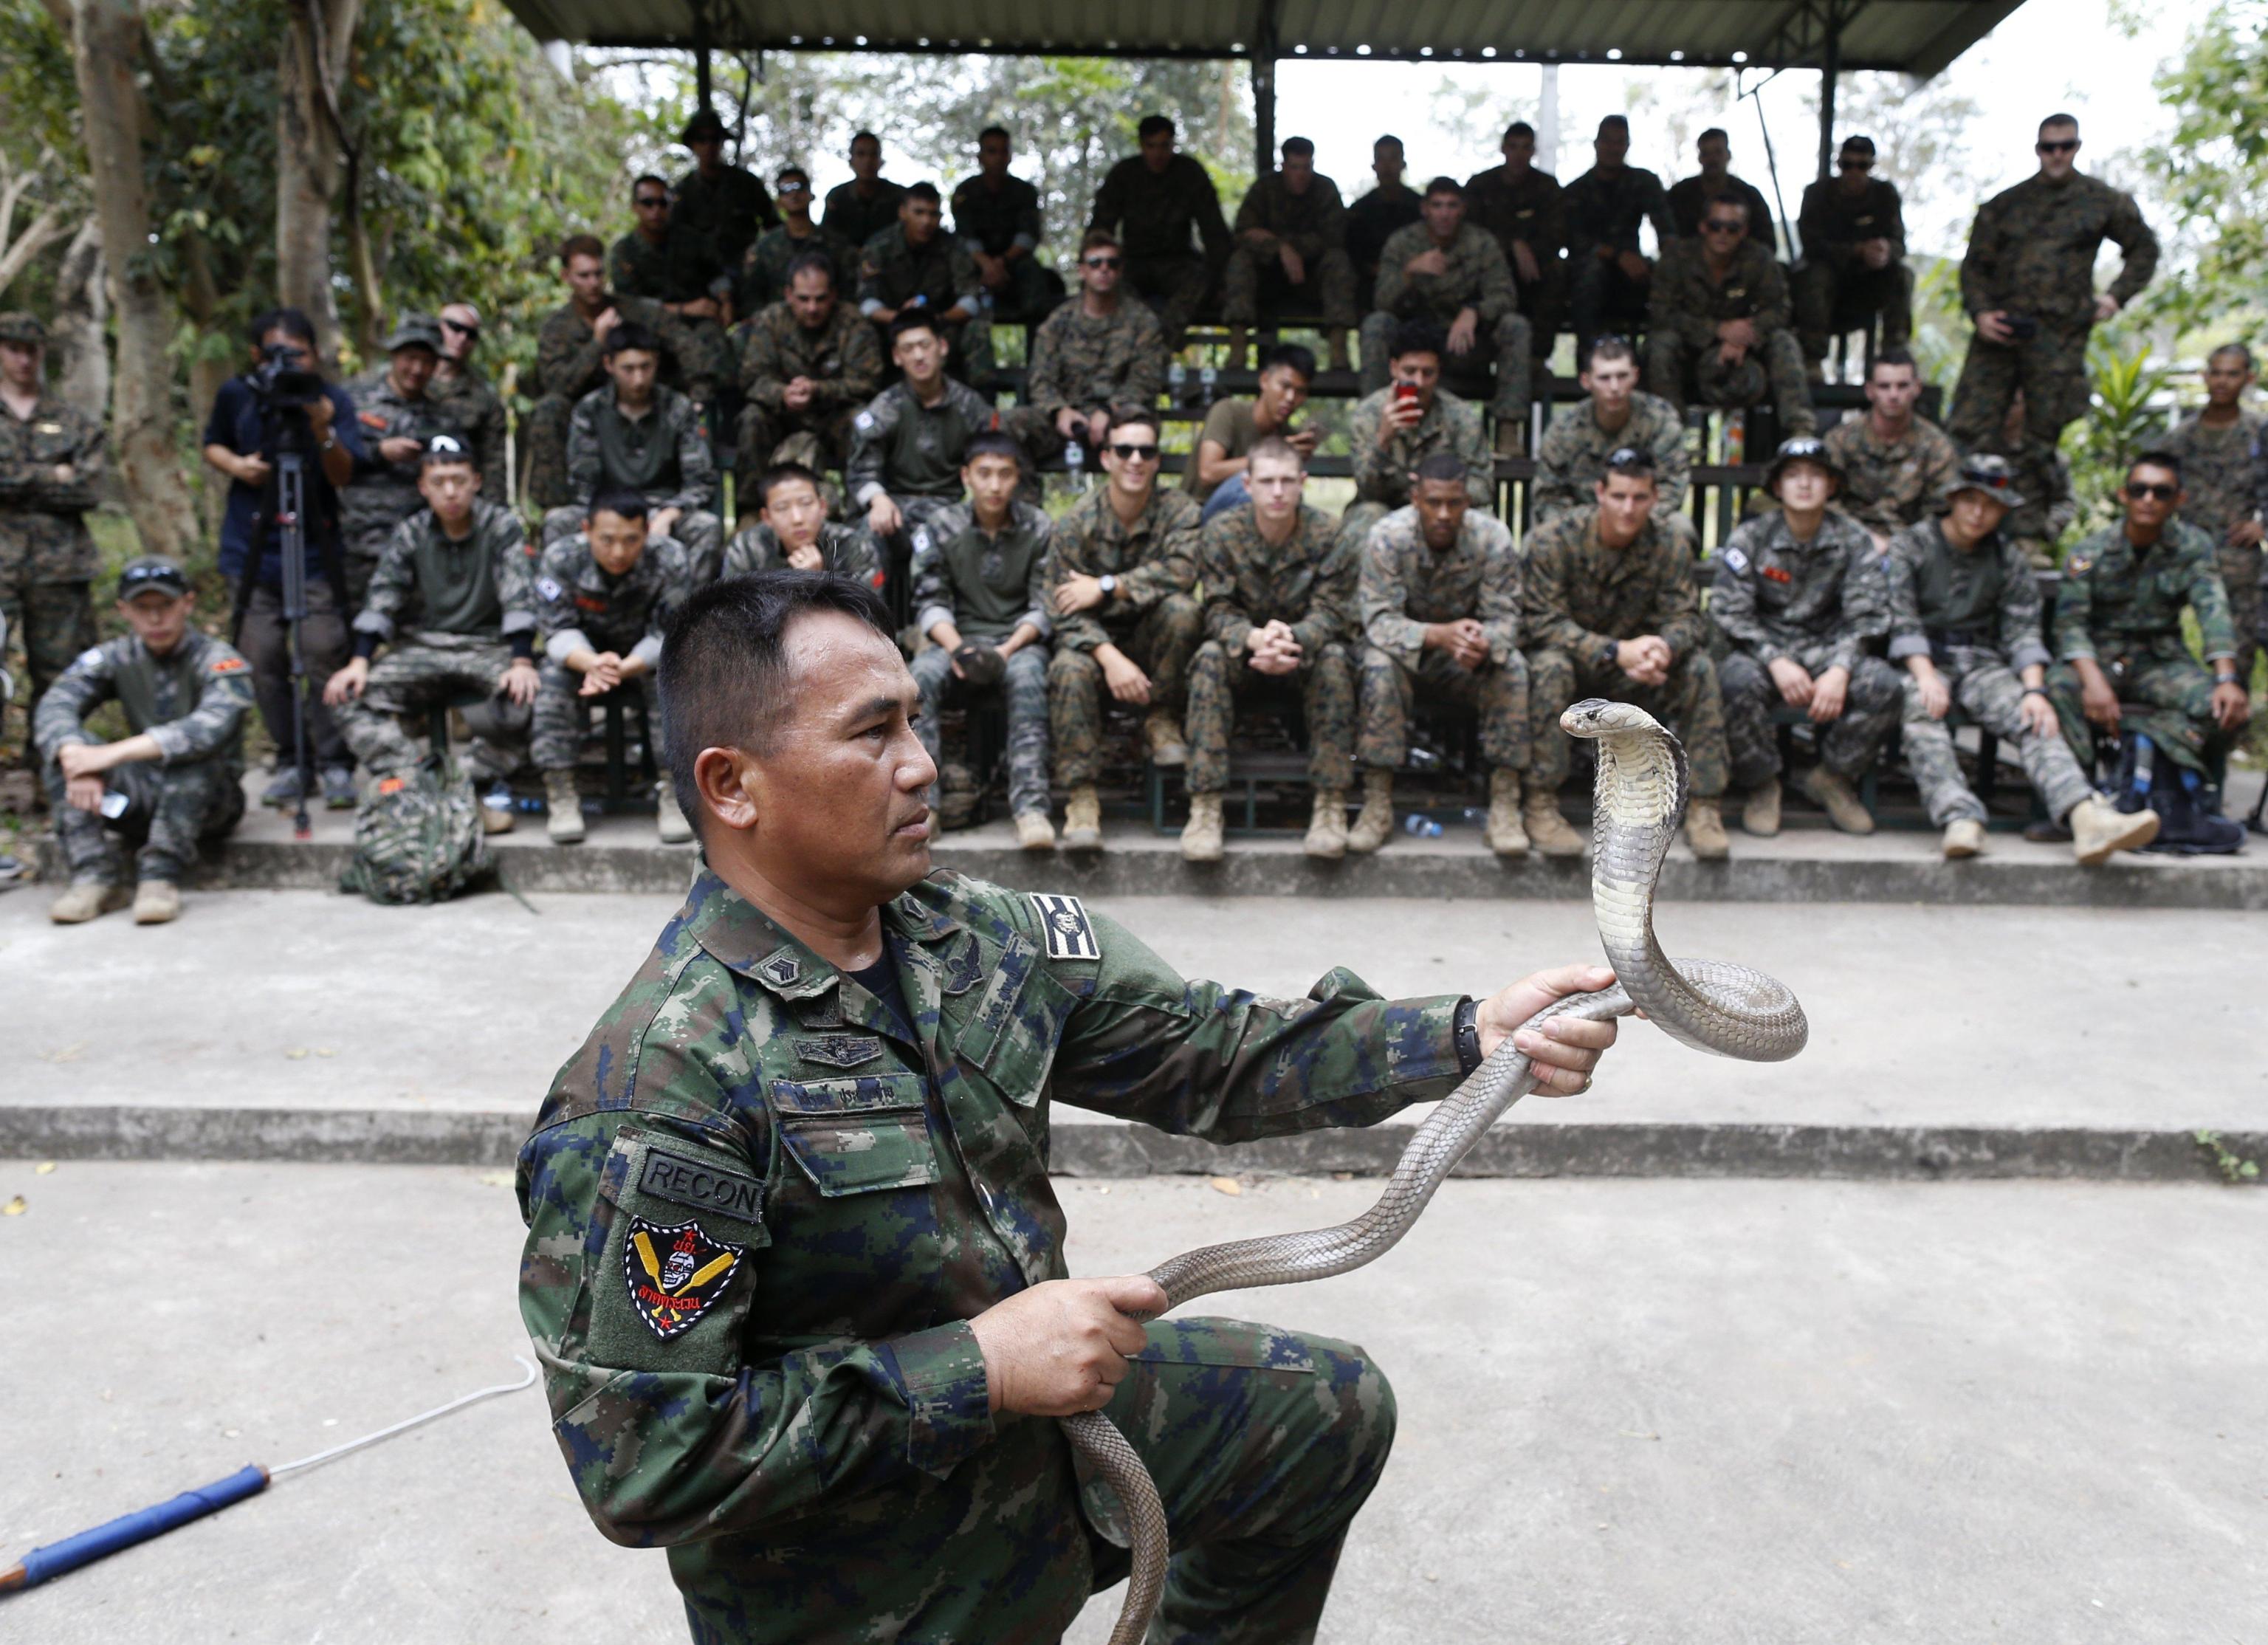 Un addestratore mostra alle truppe come rendere inoffensivo un cobra